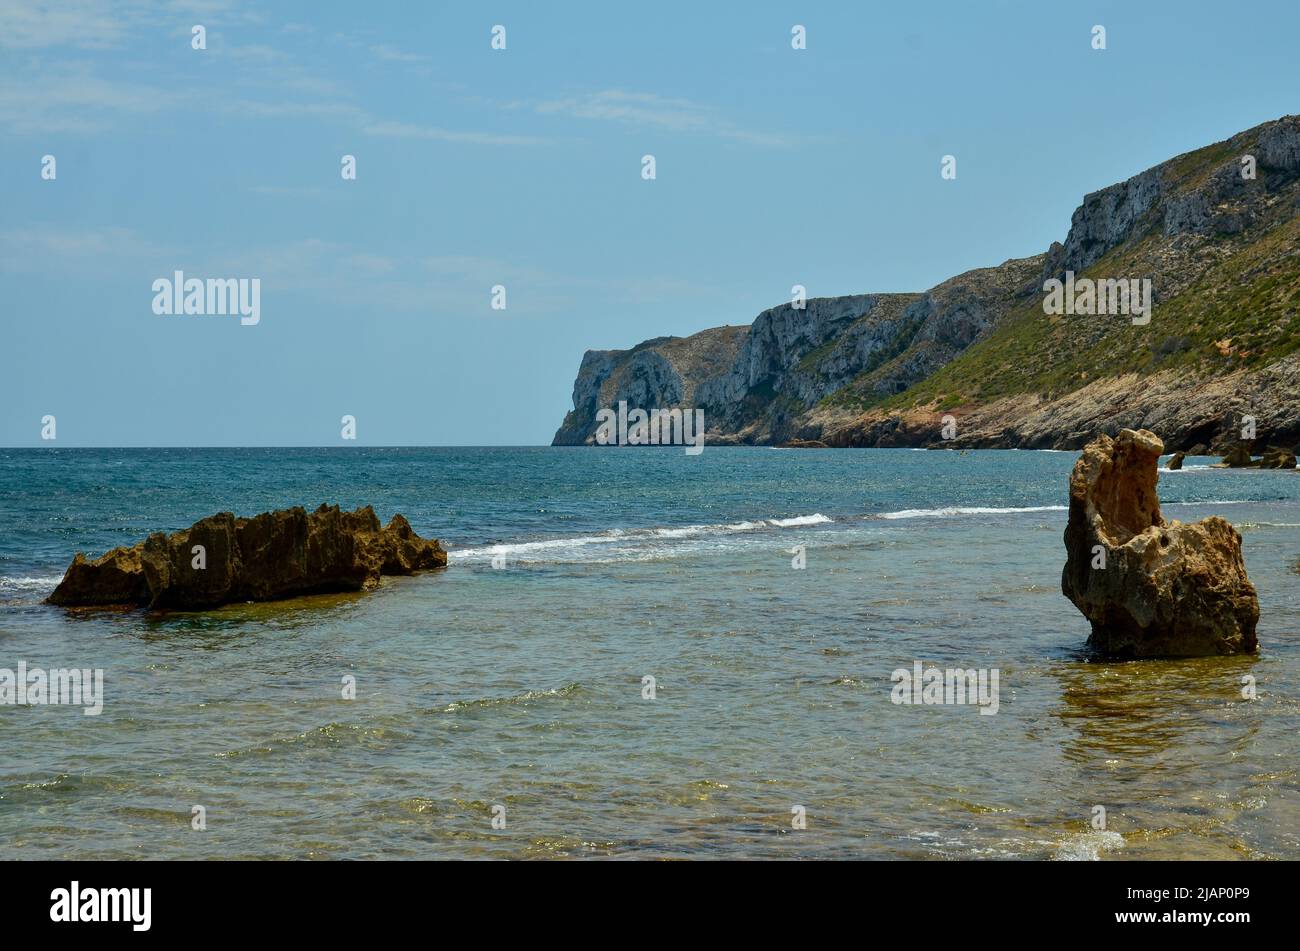 Felsen im Wasser an der Mittelmeerküste Spaniens mit Blick auf die Klippen und Berge an der Küste und das Meer unter blauem, sonnigem Himmel Stockfoto